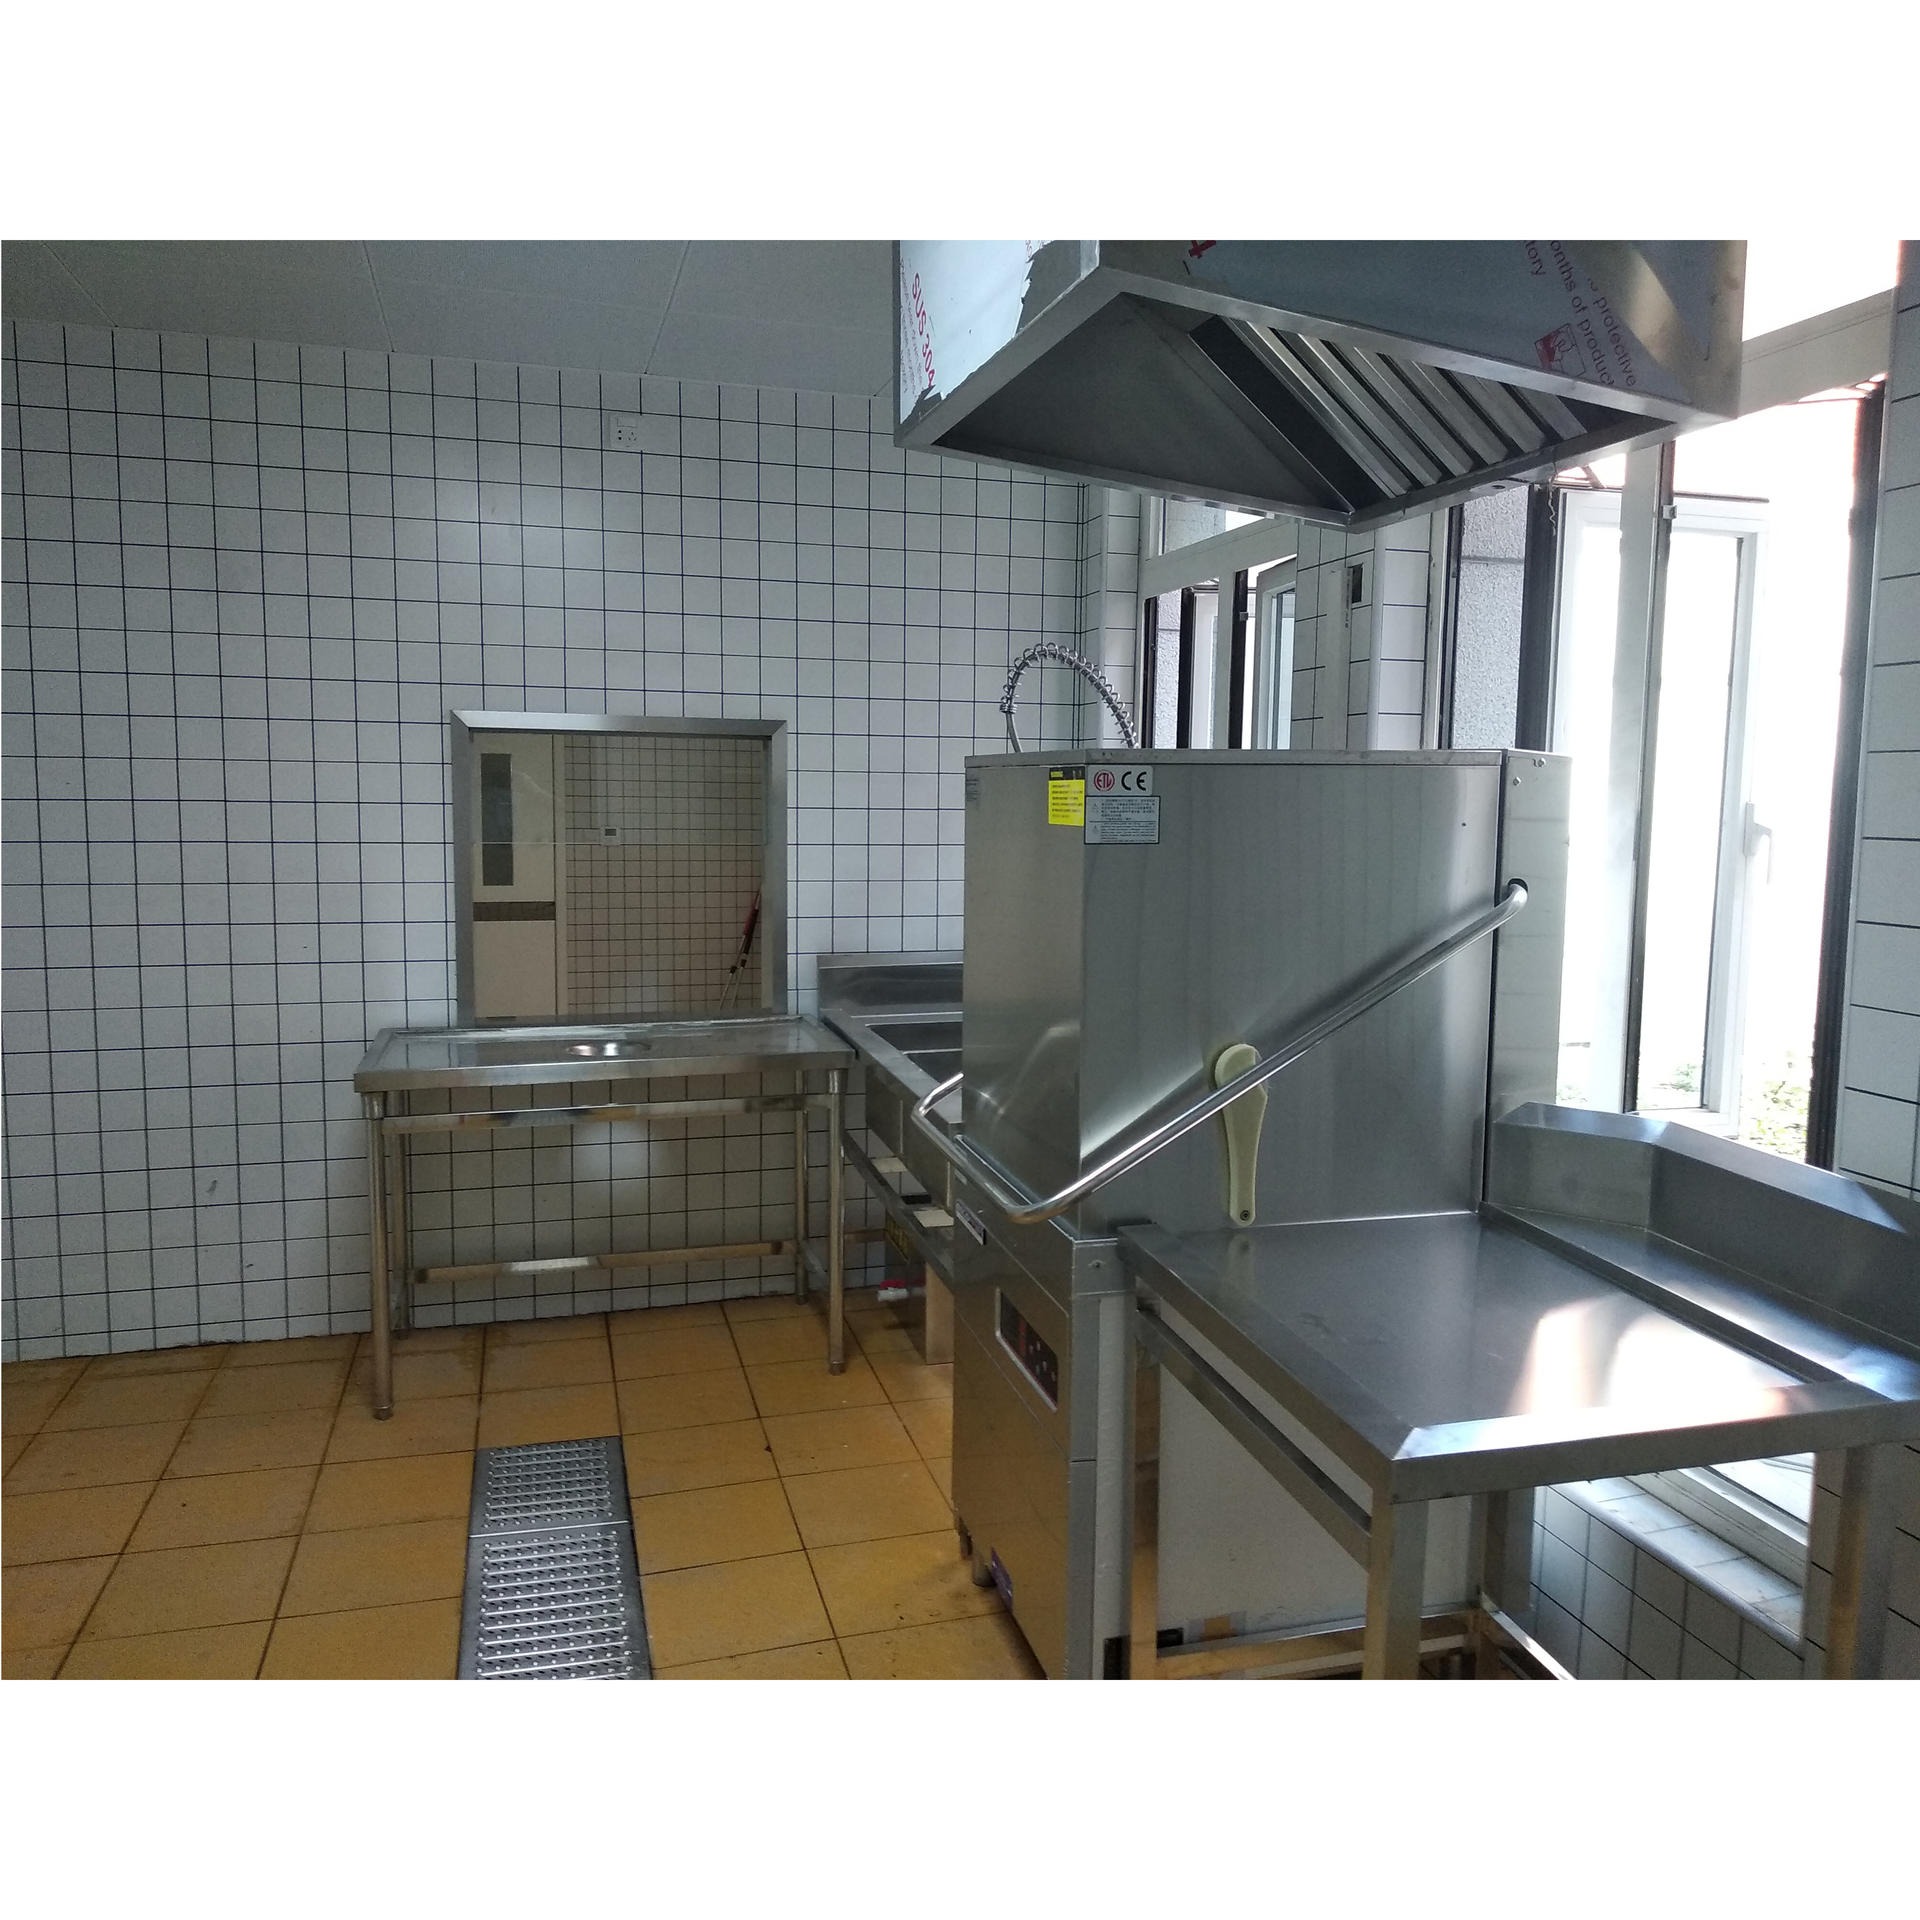 埃科菲EU-60C提拉式洗碗机 商用洗碗机 中小型食堂厨房设备